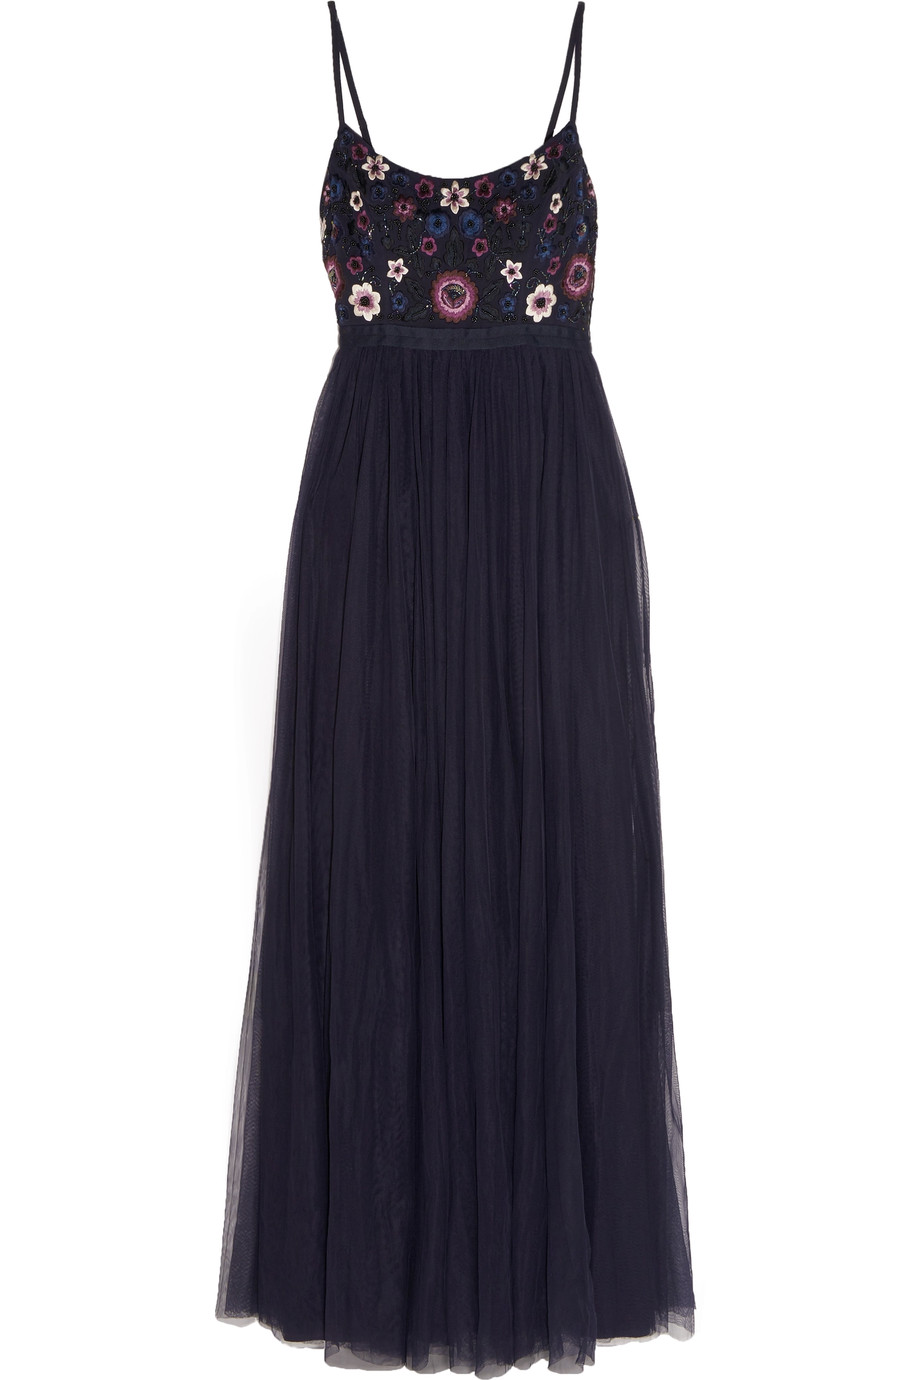 Needle & Thread Embellished Tulle Maxi Dress | ModeSens